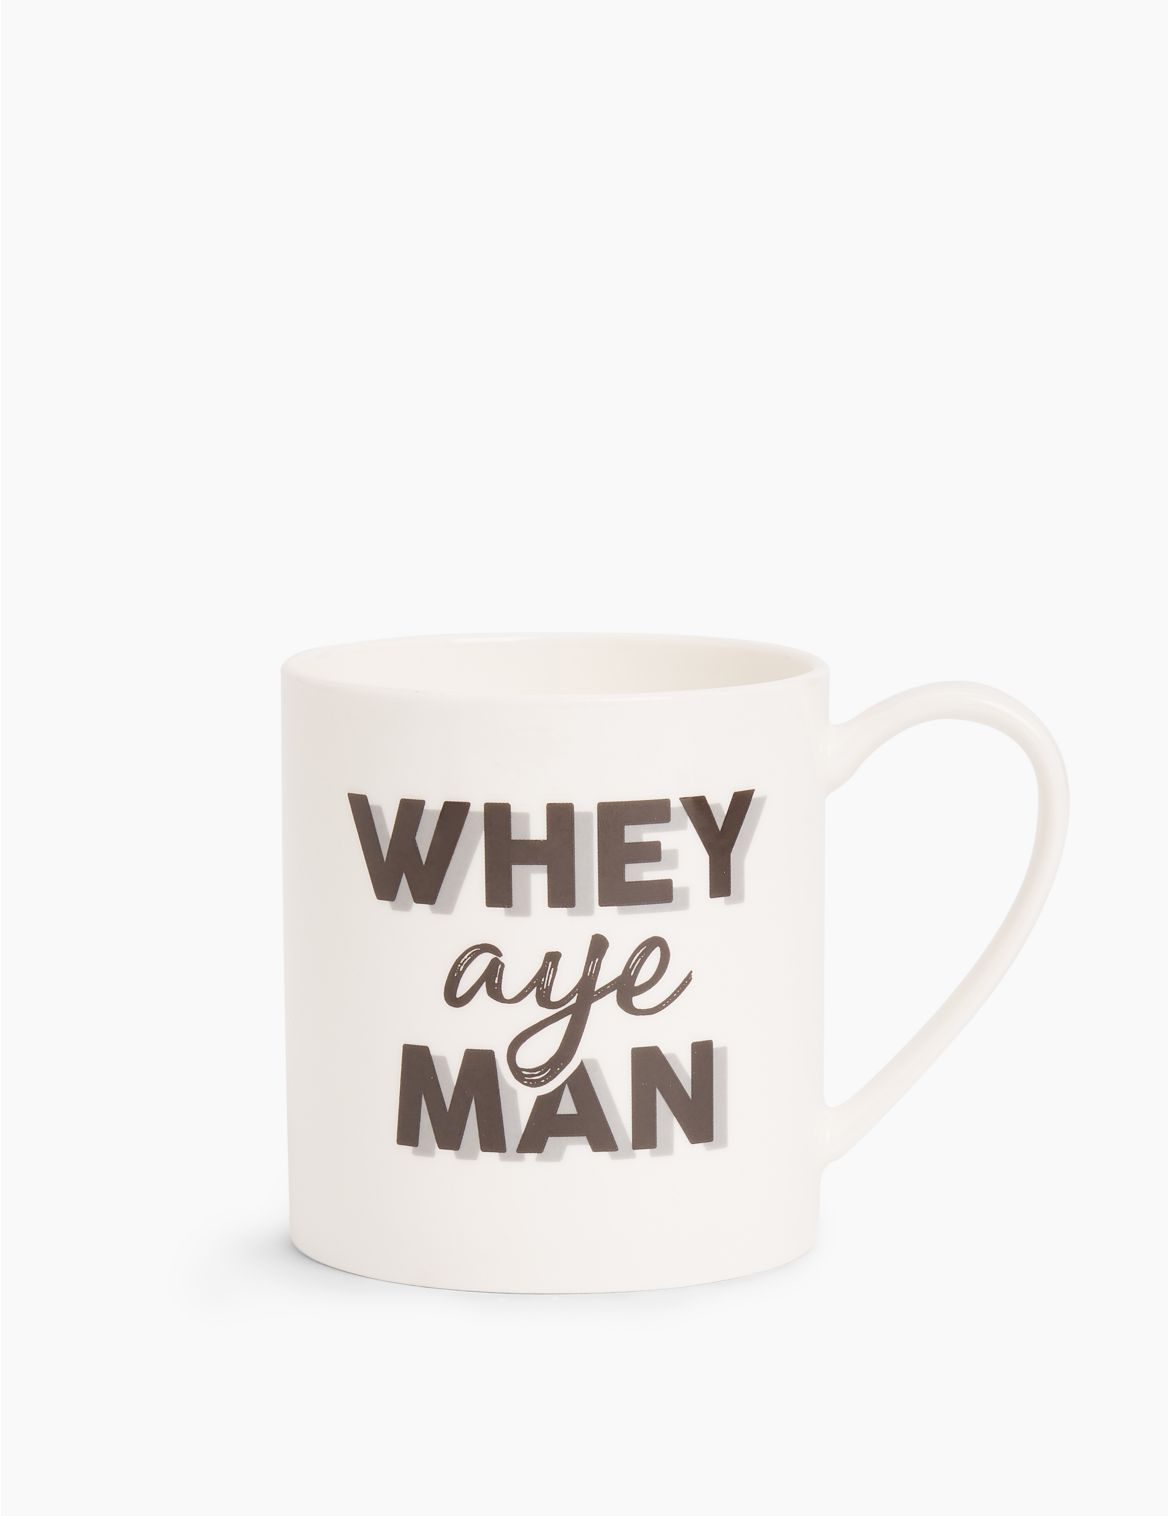 Whey Aye Man Mug multi-coloured